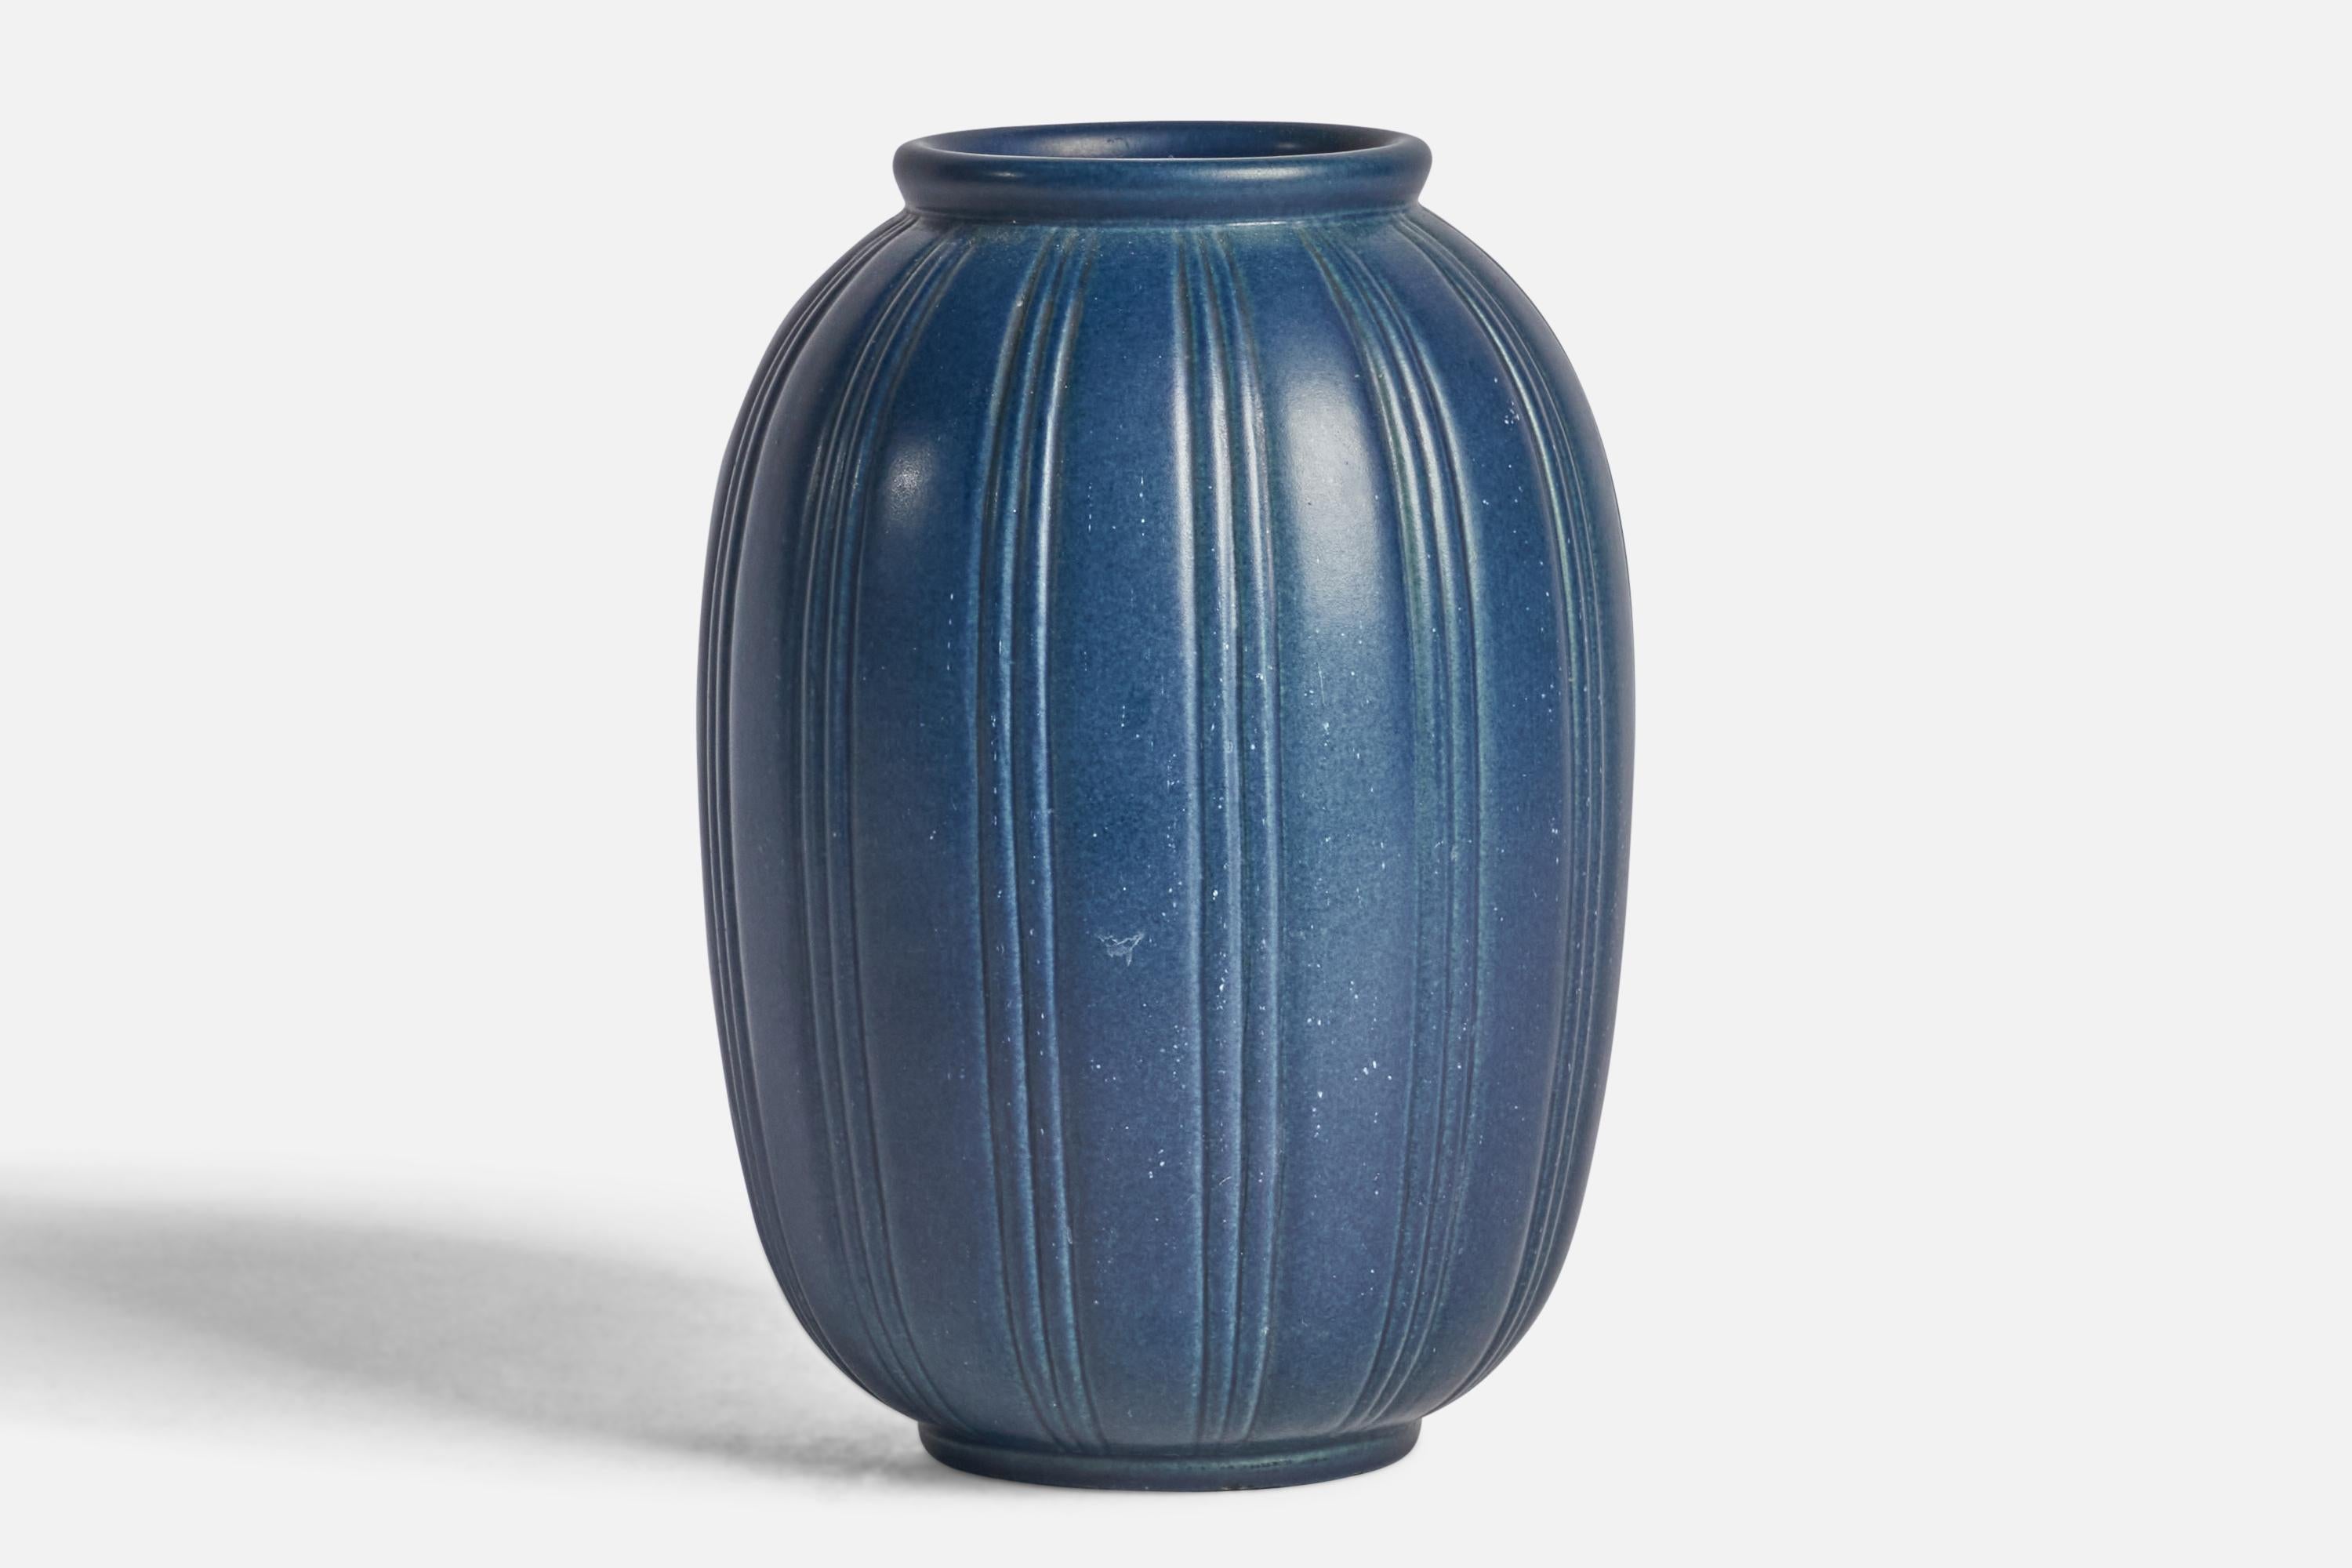 Vase en grès cannelé à glaçure bleue, conçu et produit par Peters Ipsen Enke, Danemark, années 1940.
